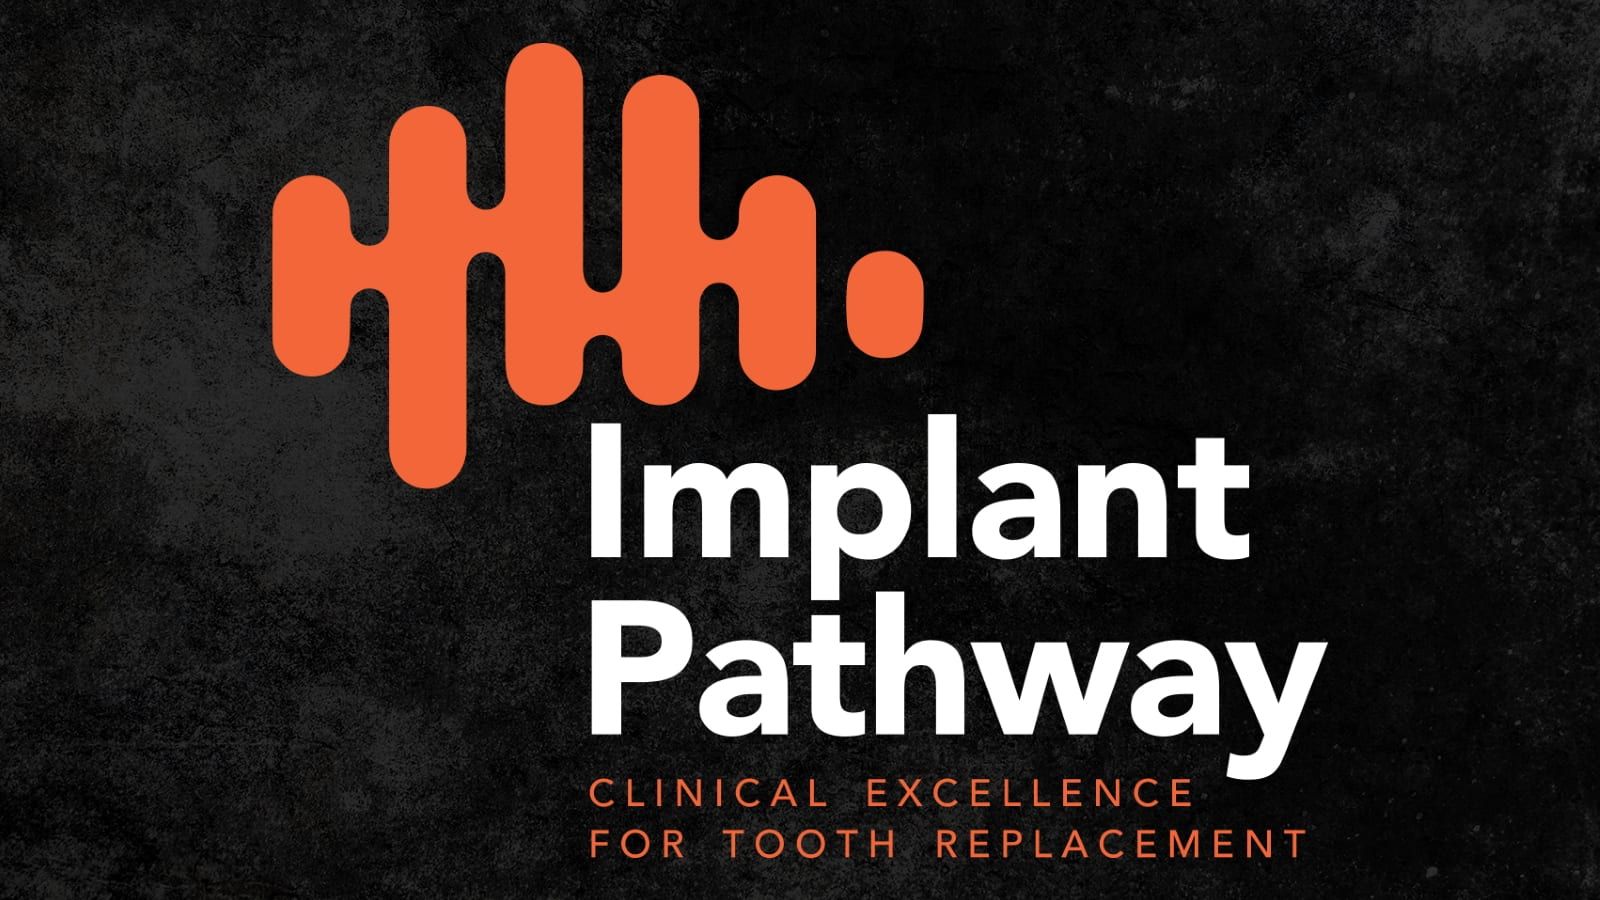 Implant pathway